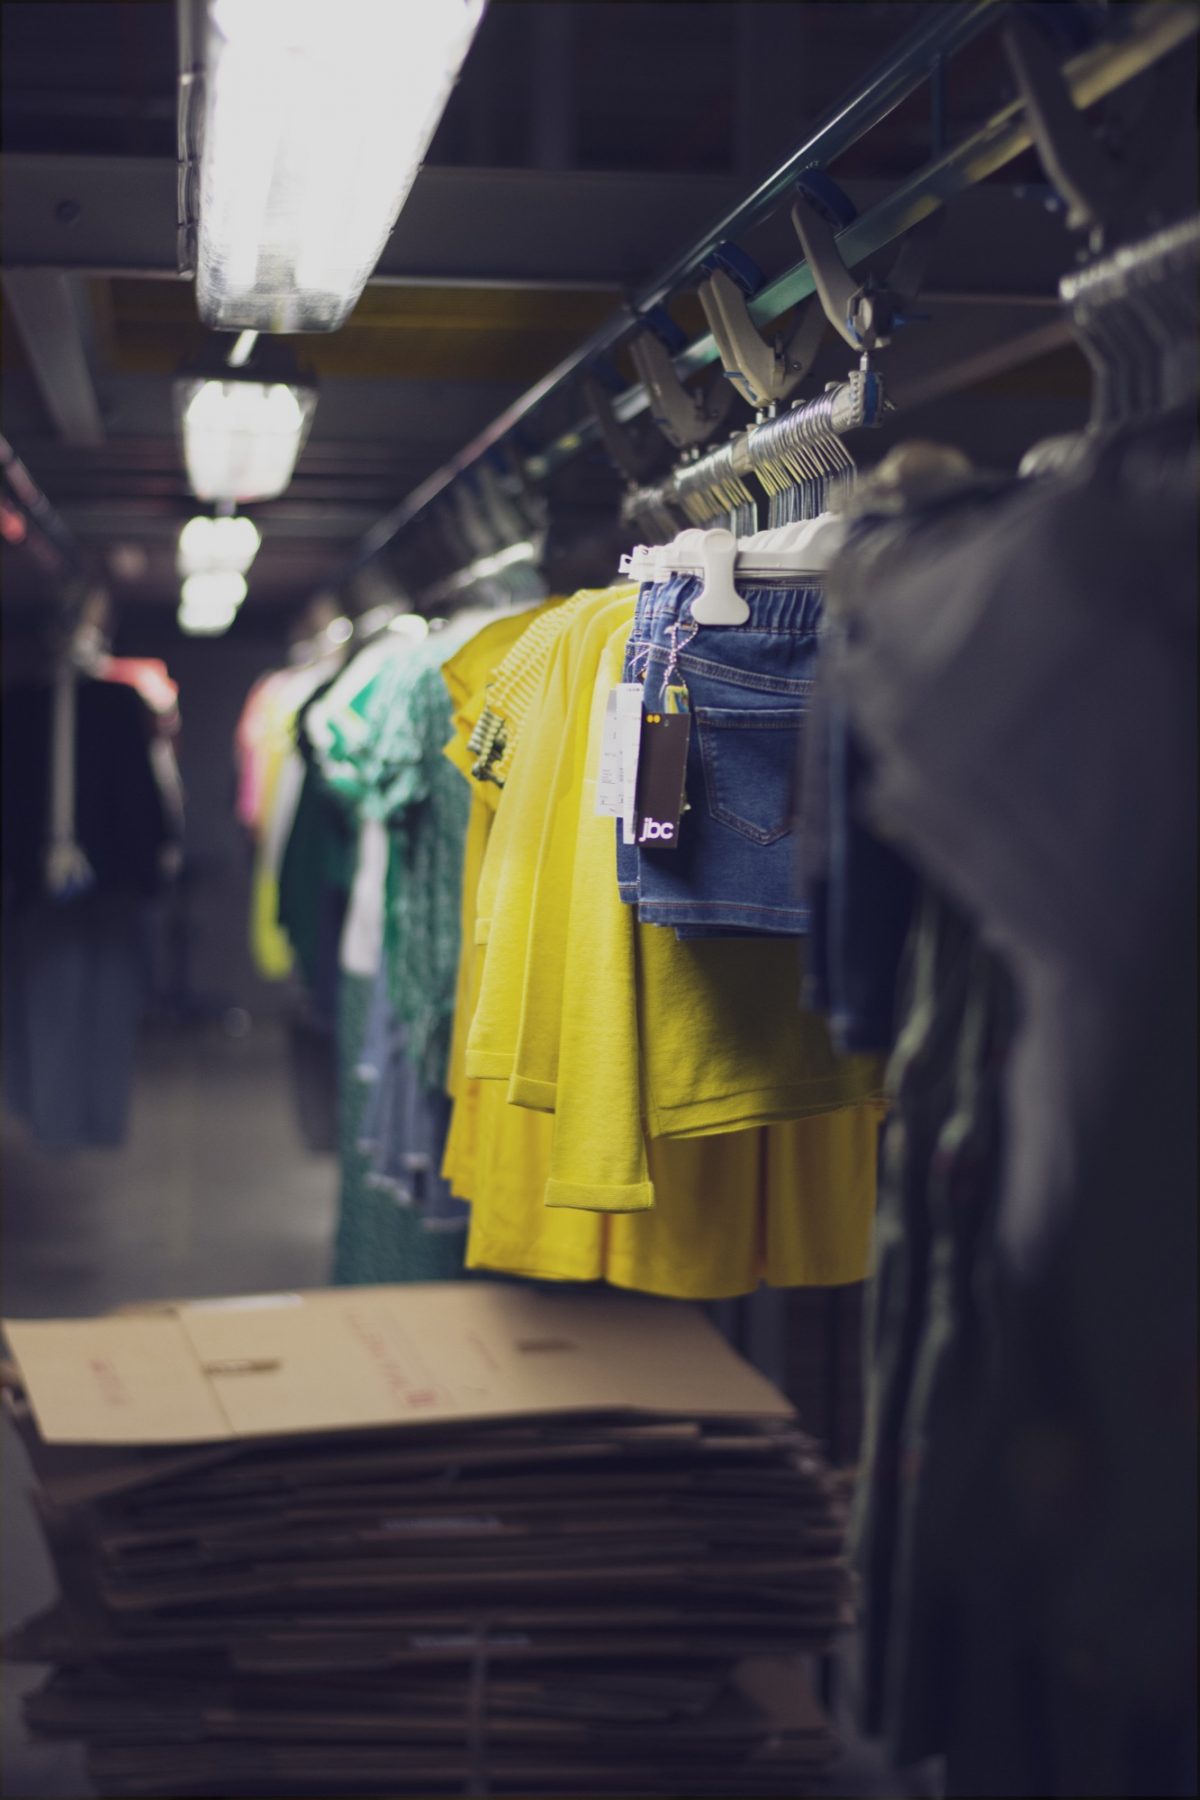 In de werkplaats van Bewel in Hasselt wordt er aan textielconditionering gedaan. er hangen lange rijen met kledingstukken op kapstokken, die gecontroleerd worden, een label krijgen, enzovoort.